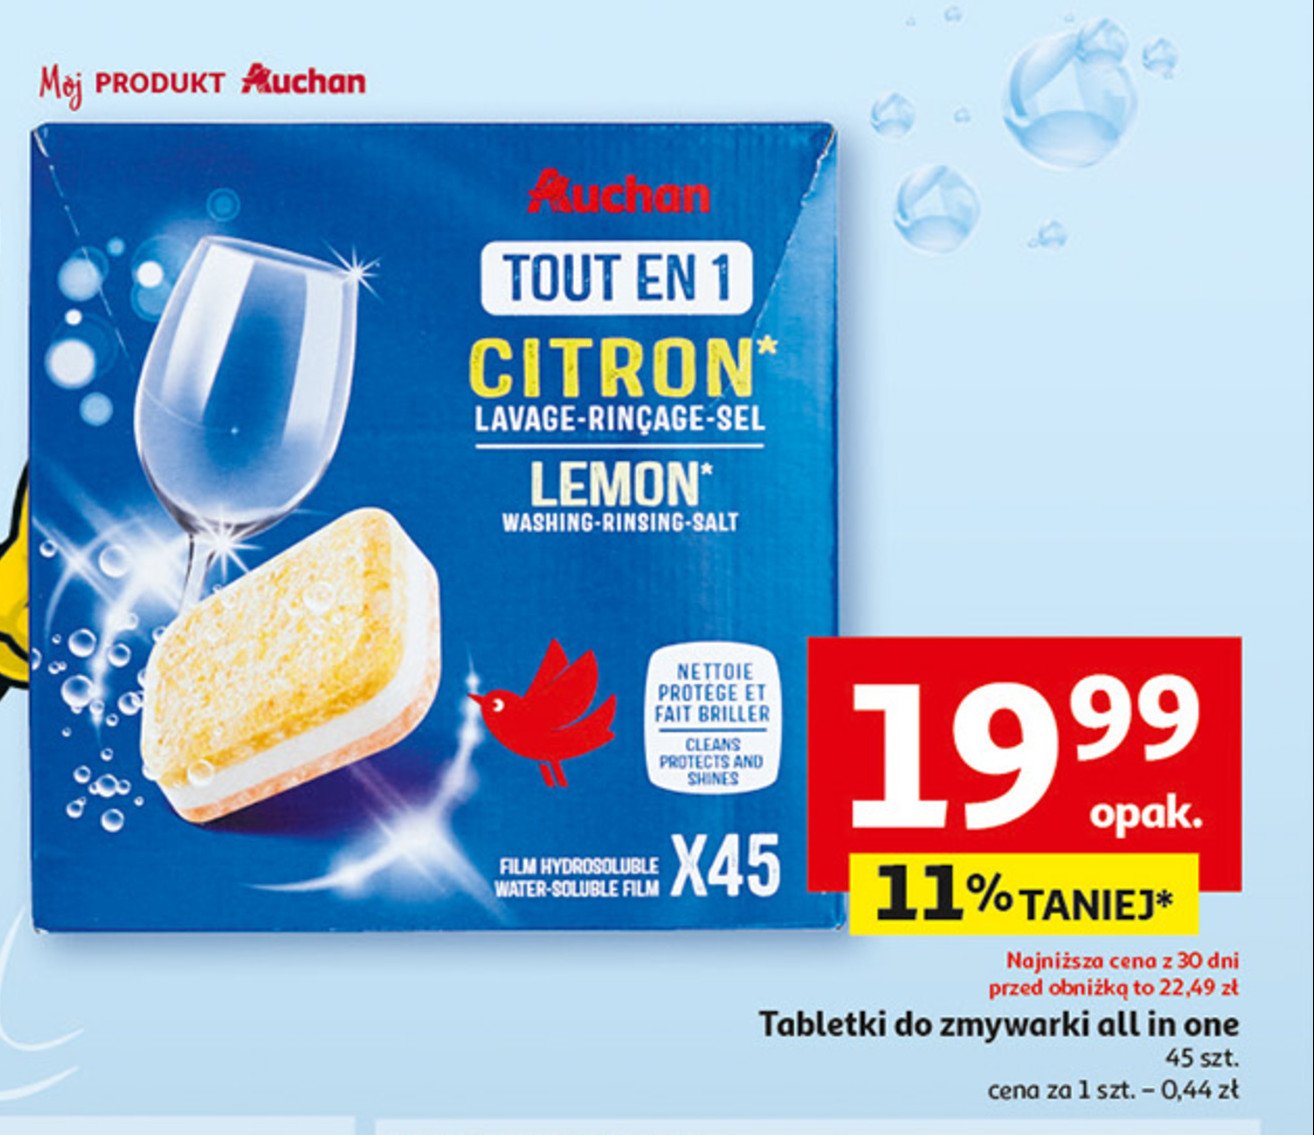 Tabletki wielofunkcyjne do zmywarek citron Auchan promocja